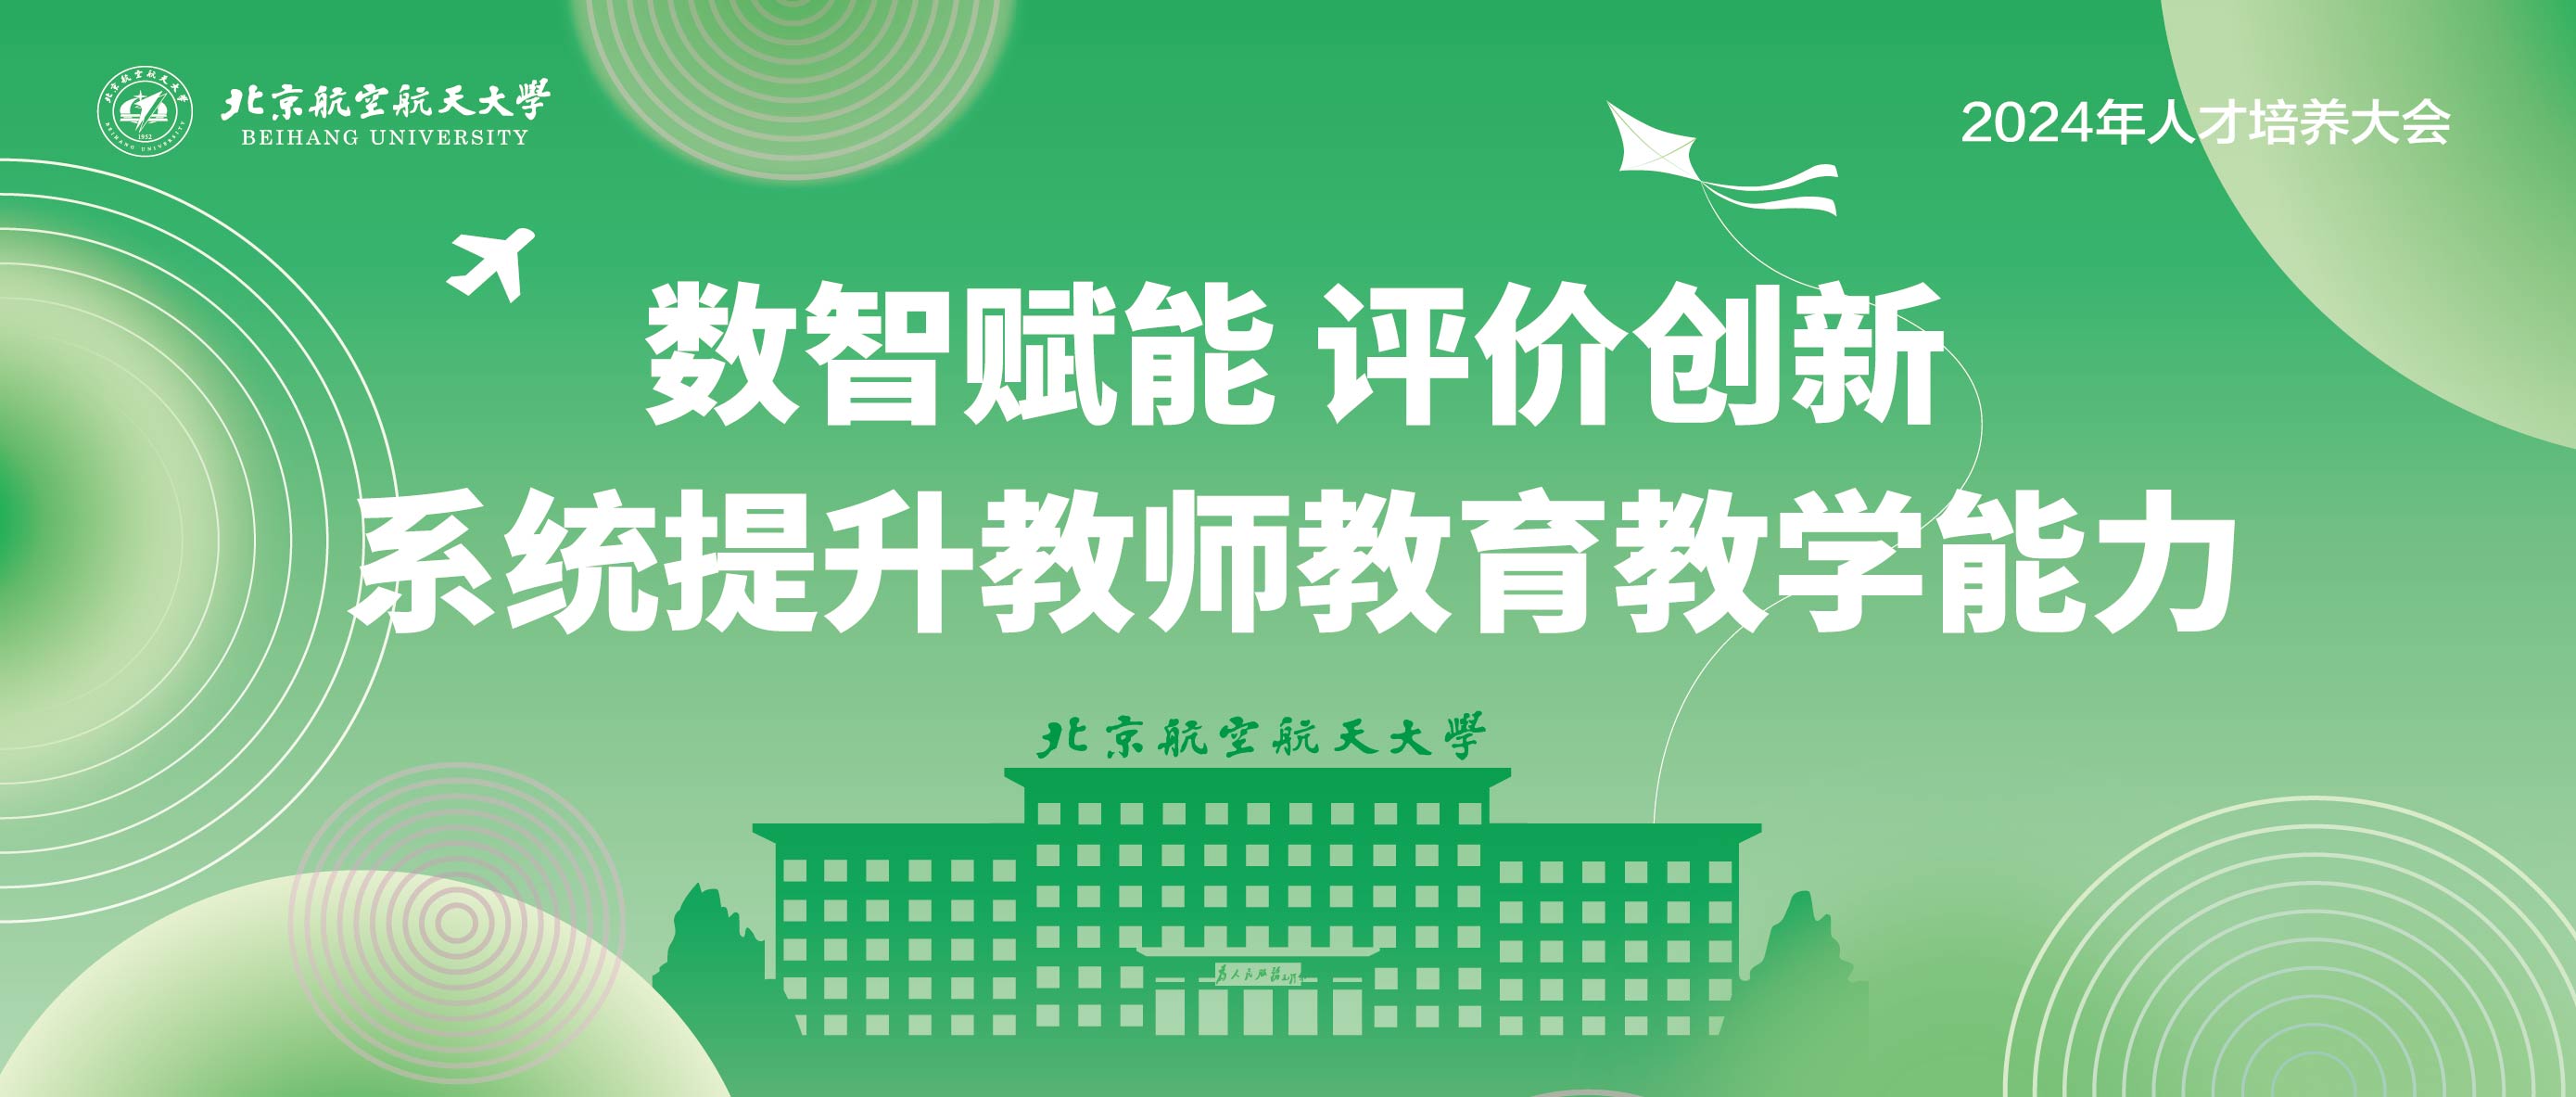 【专稿】以学生为中心！让学生拥有更多获得感、幸福感——北京航空航天大学服务育人工作纪实